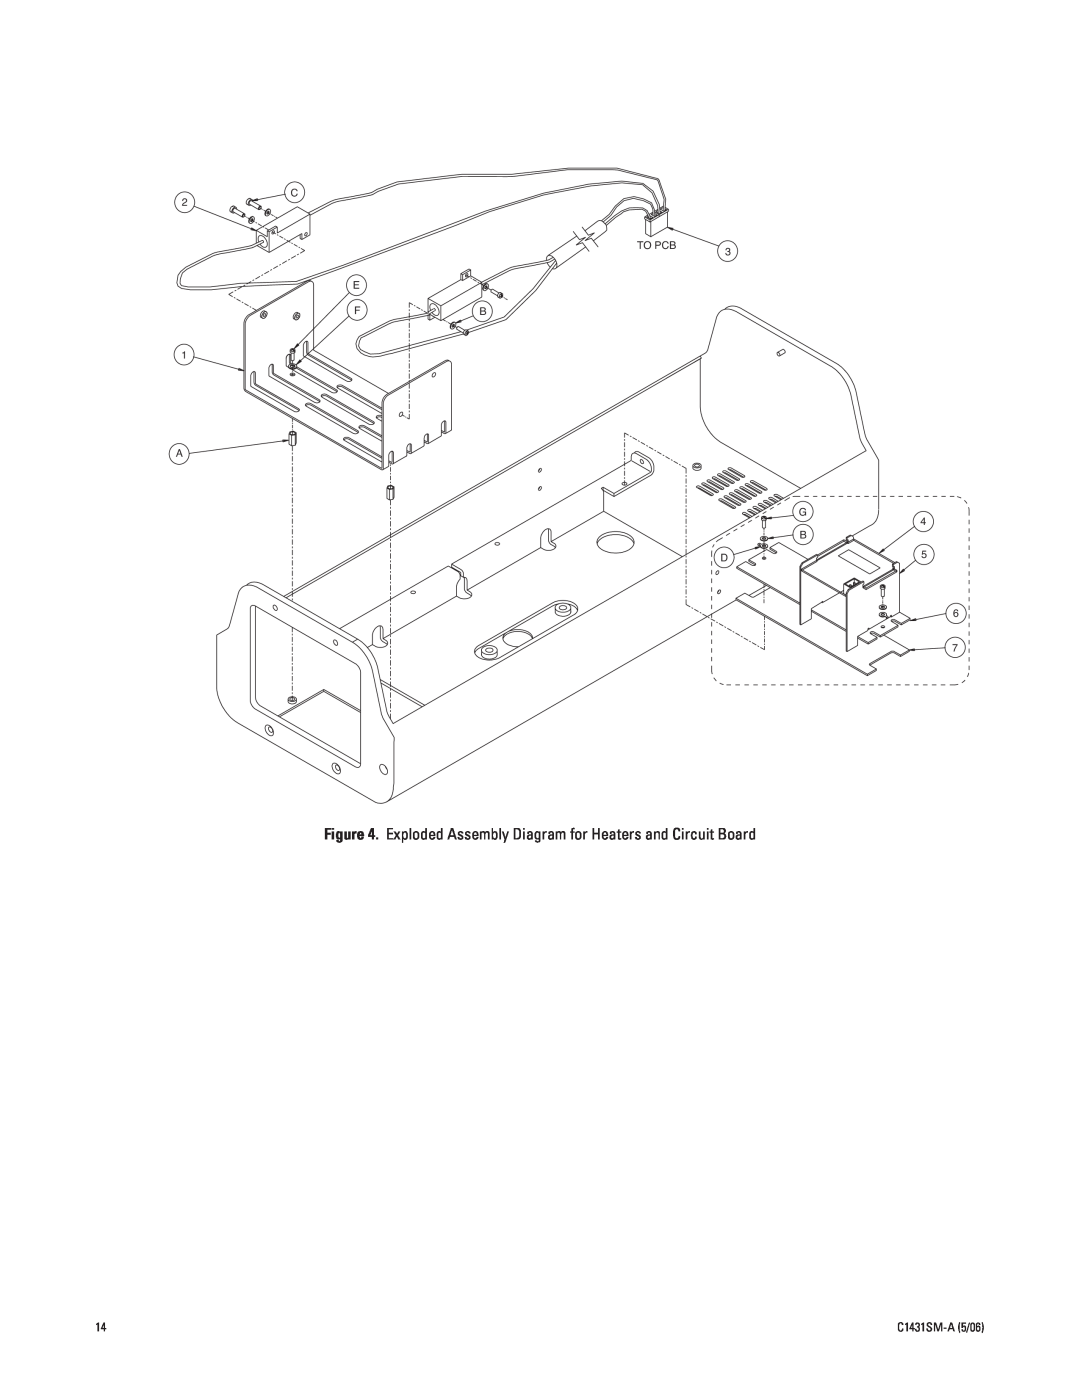 Pelco EH5700 Series manual C 2 TO PCB E FB 1 A, 3 G 4 B, C1431SM-A5/06 